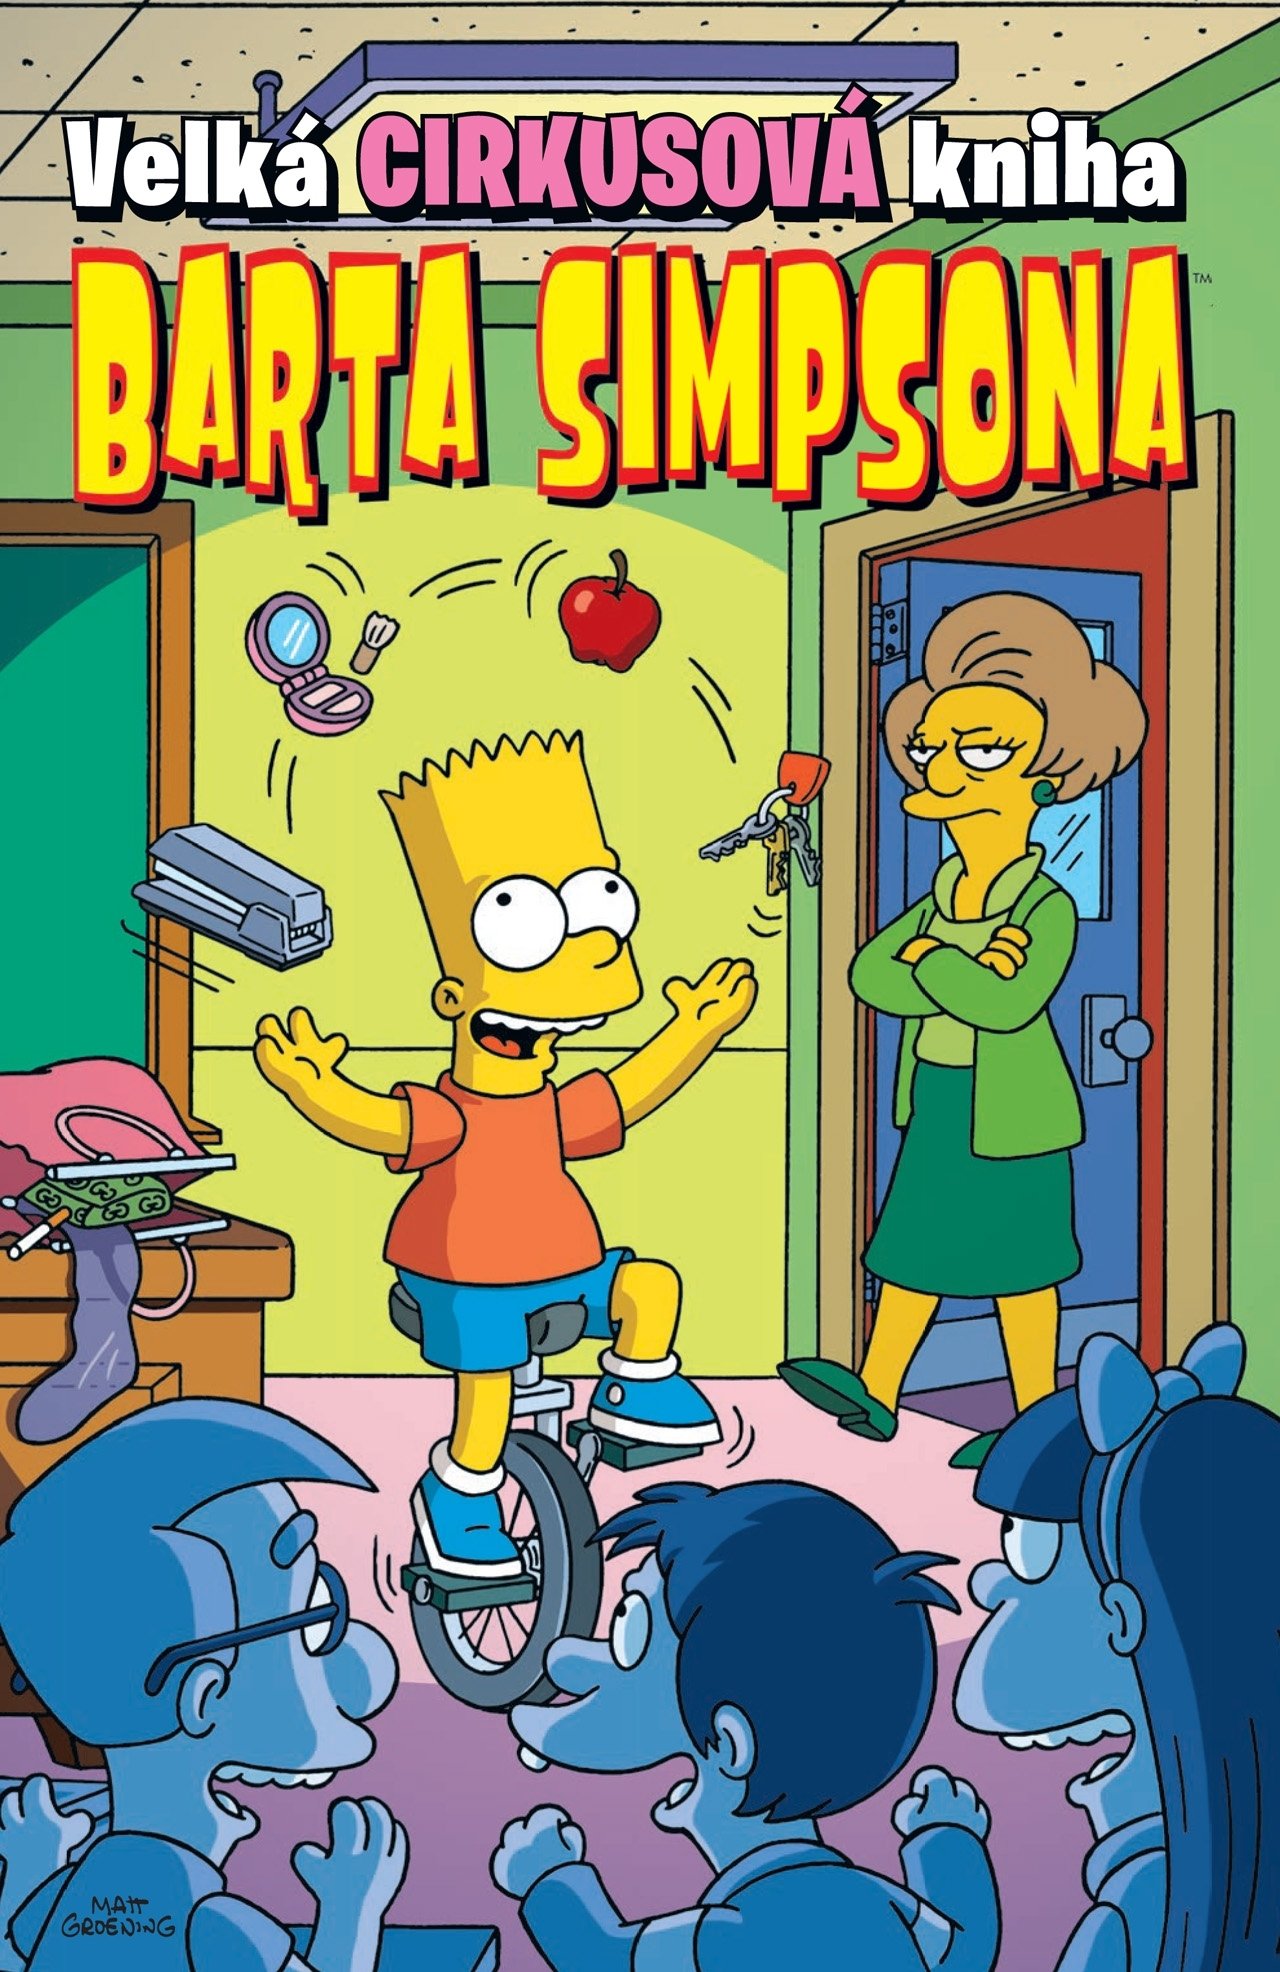 Velká cirkusová kniha Barta Simpsona - autorů kolektiv